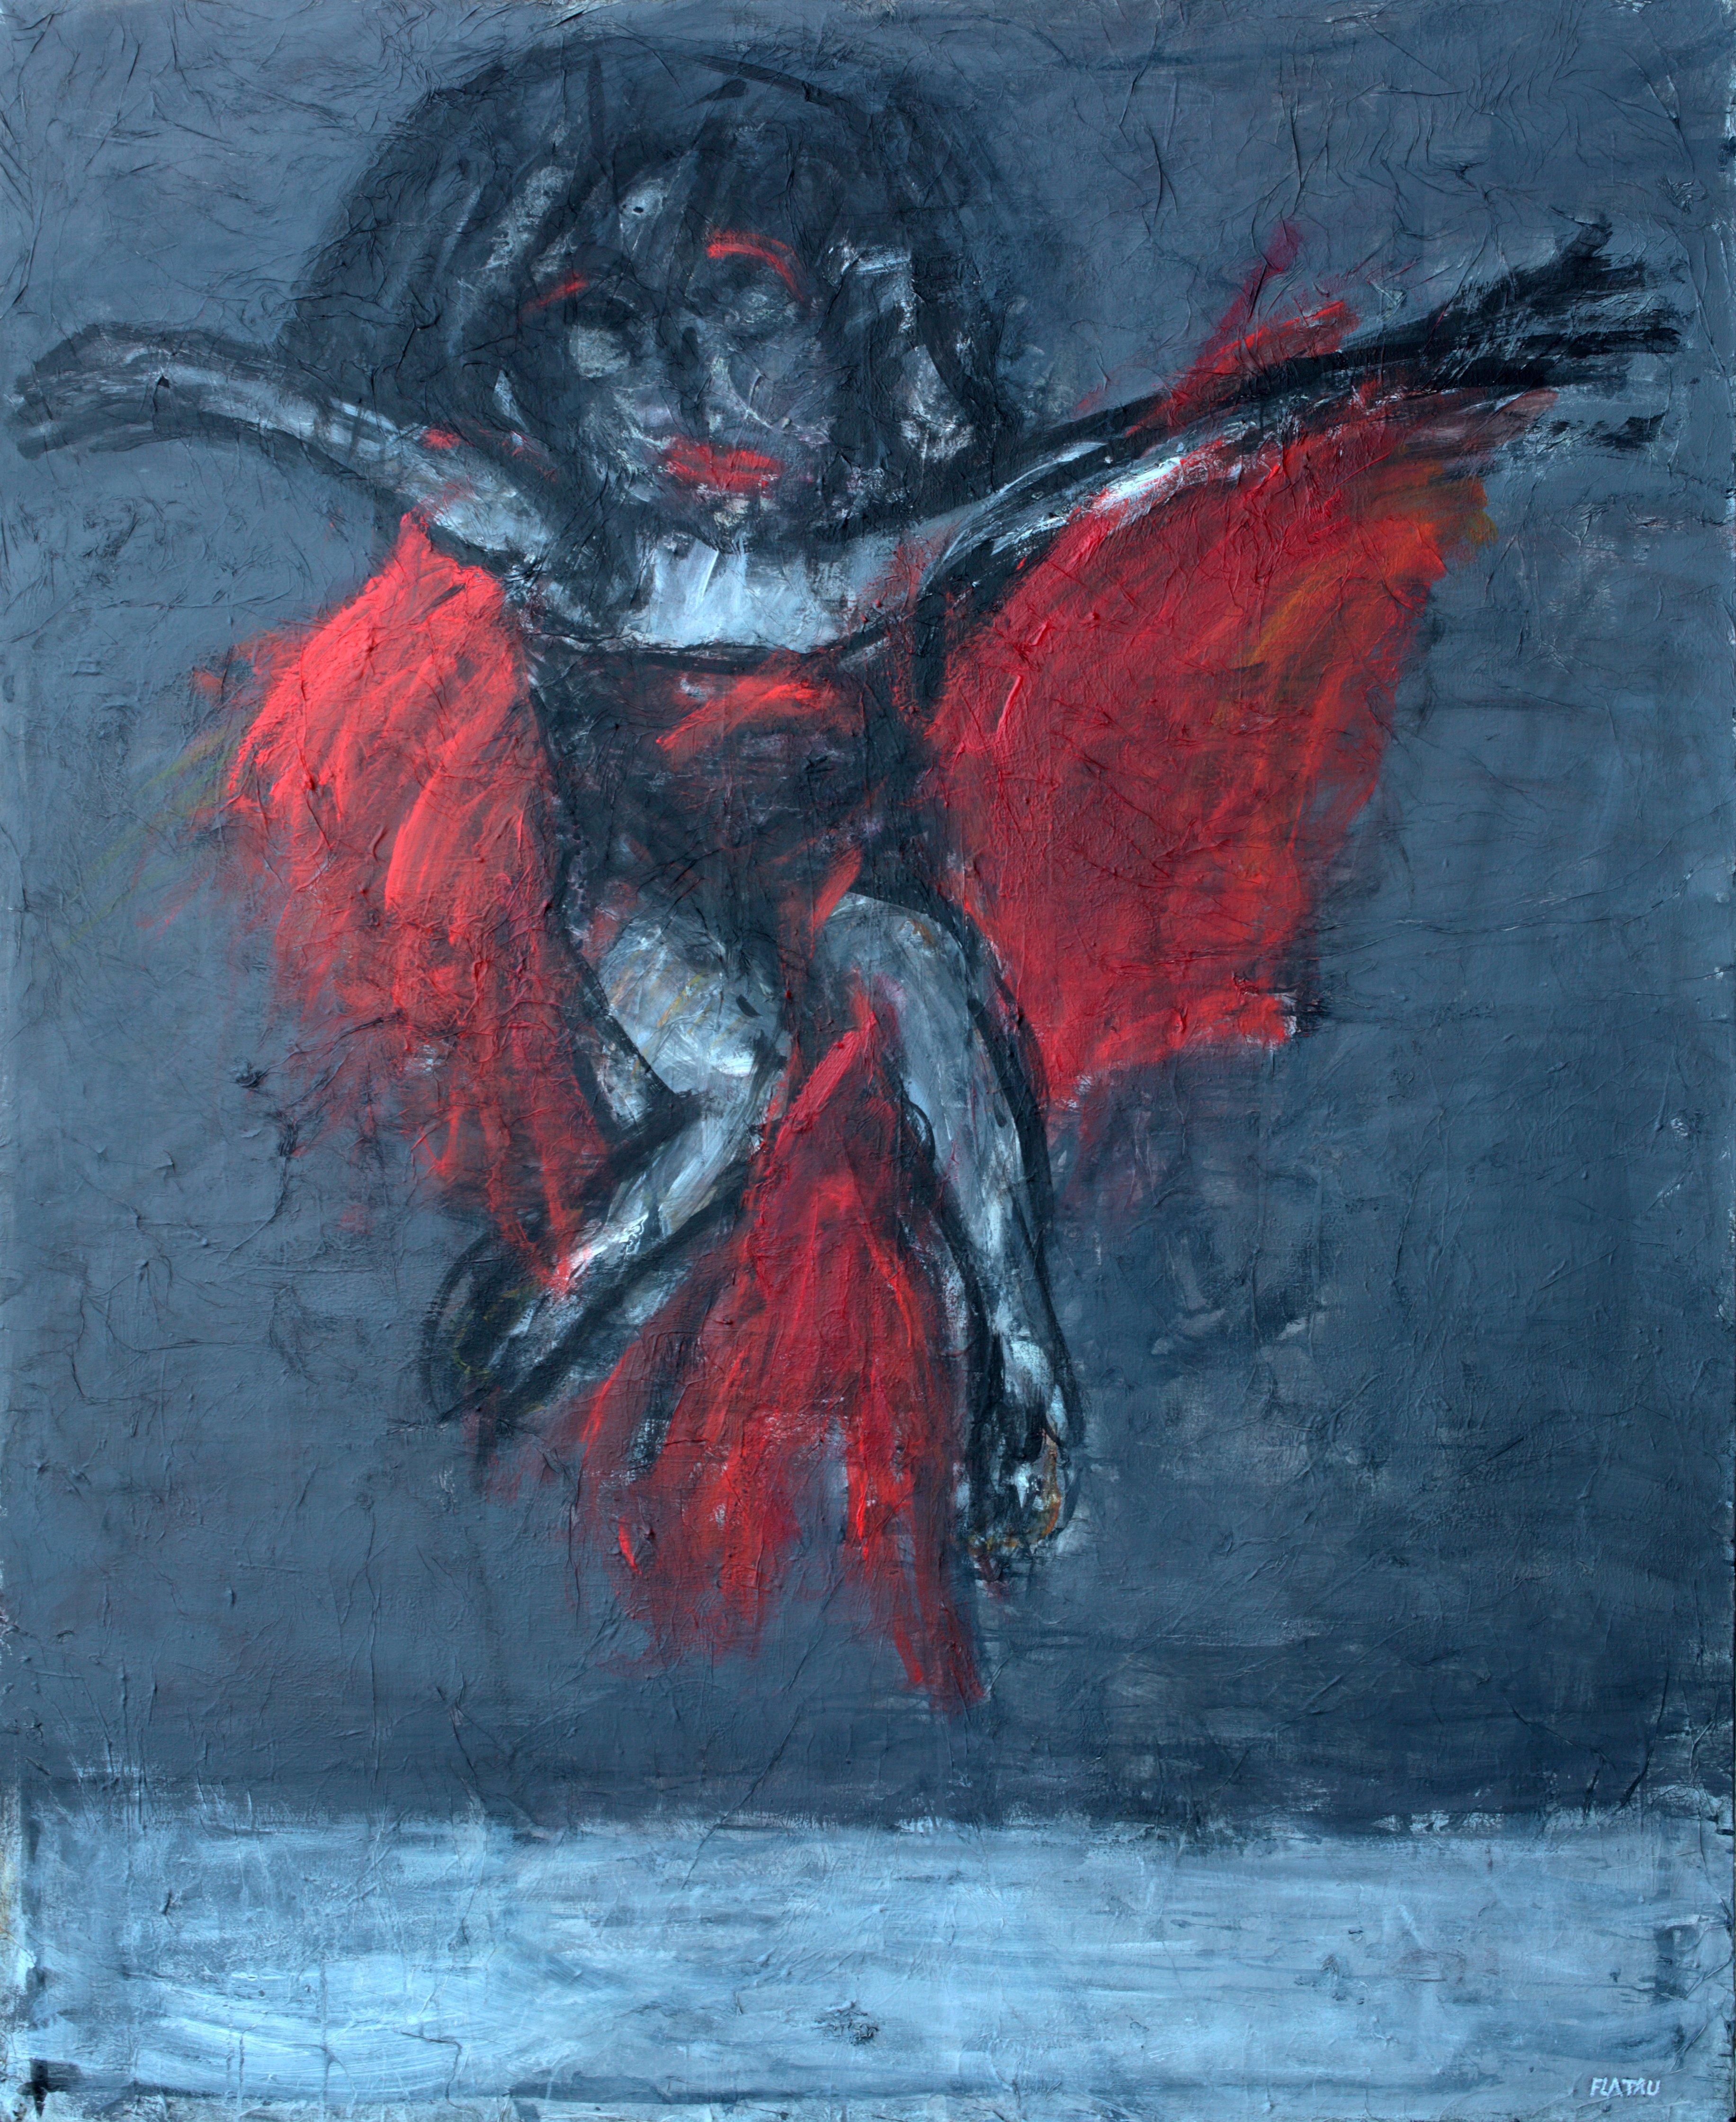 Danser avec moi - Joanna Flatau, peinture expressionniste contemporaine du XXIe siècle